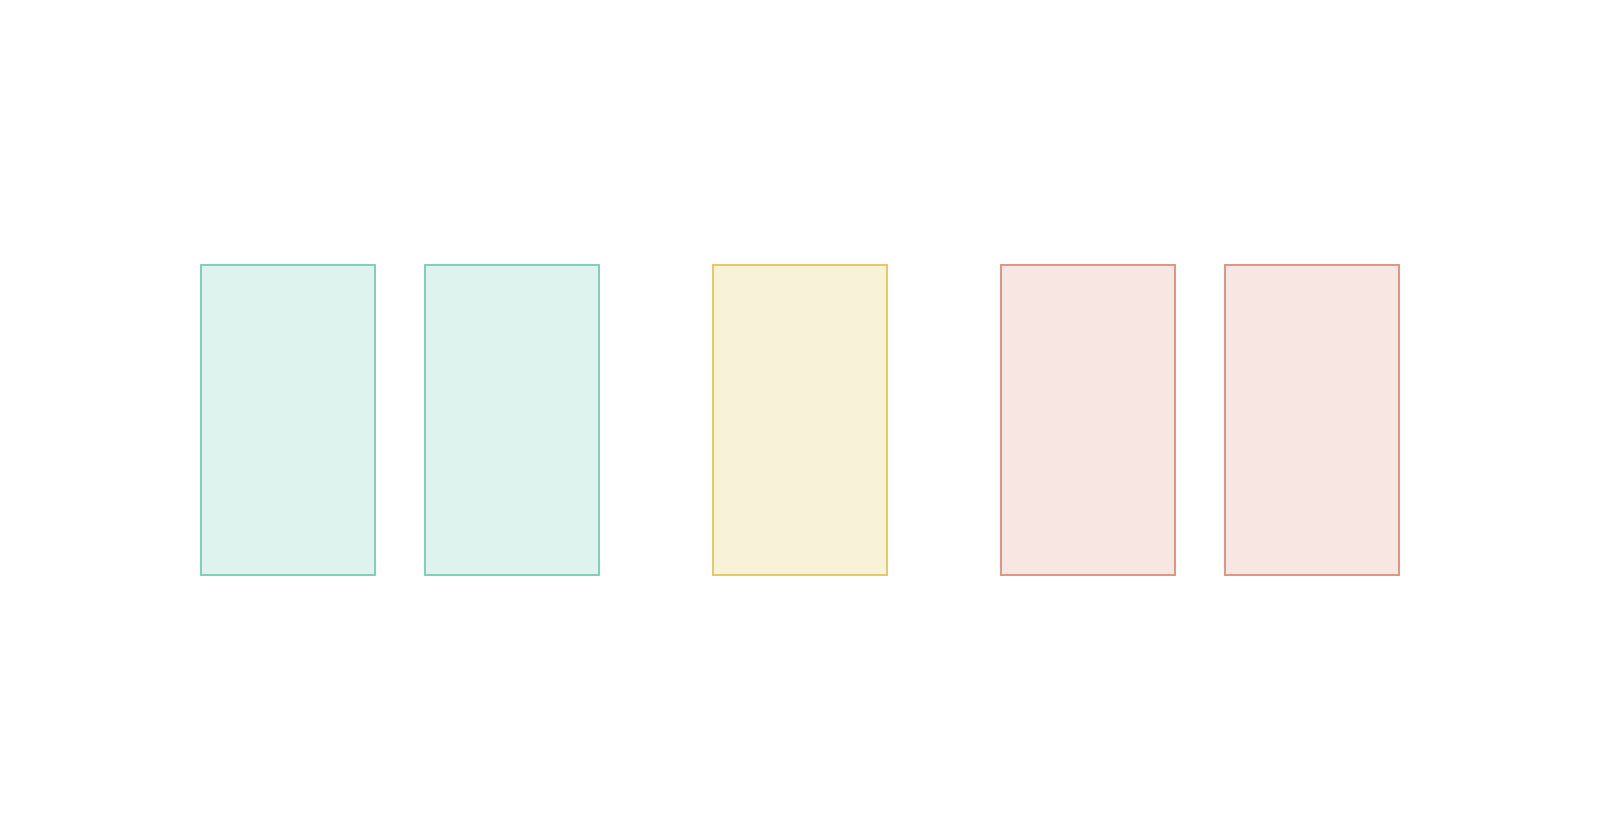 一系列代表水平分隔的屏幕的色块